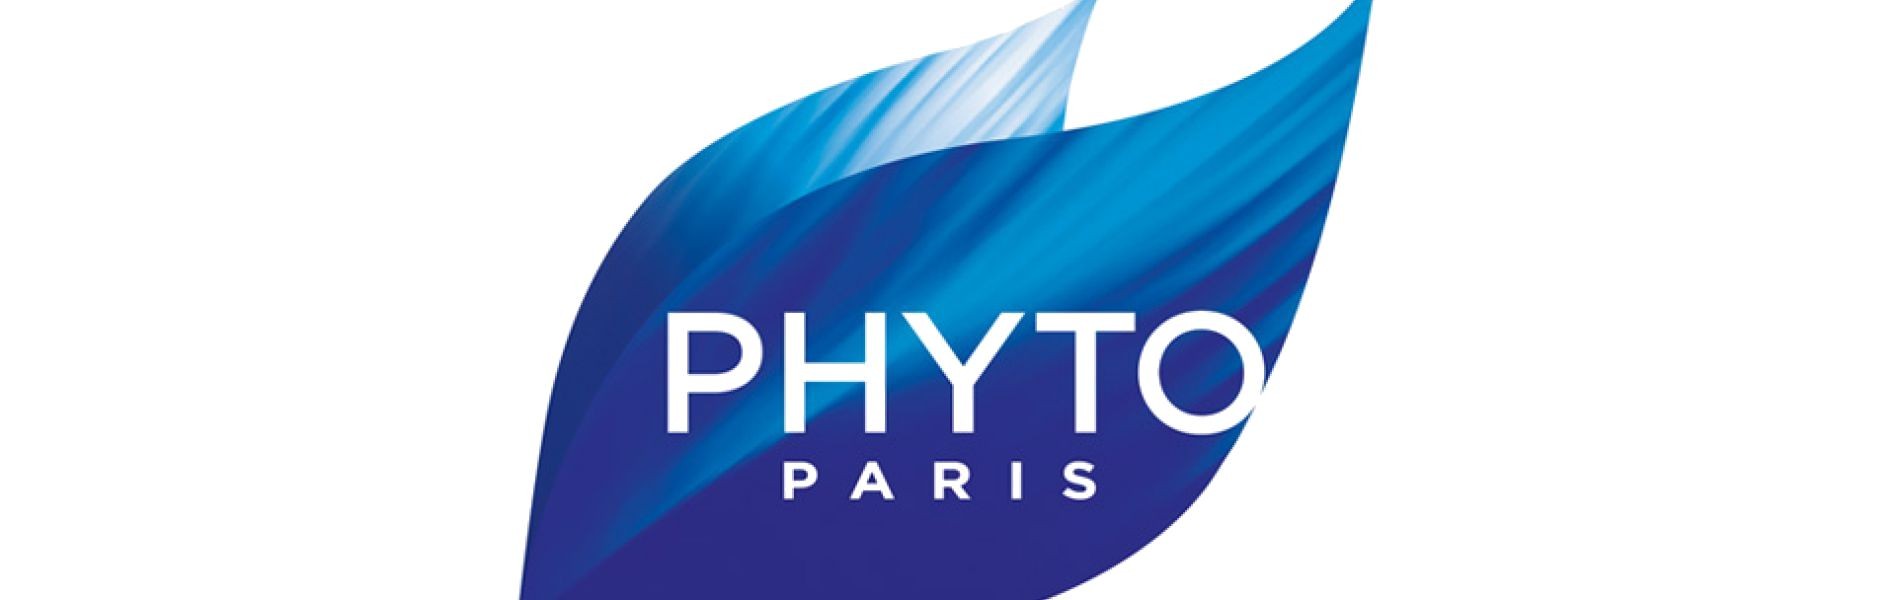 PHYTO-PARIS